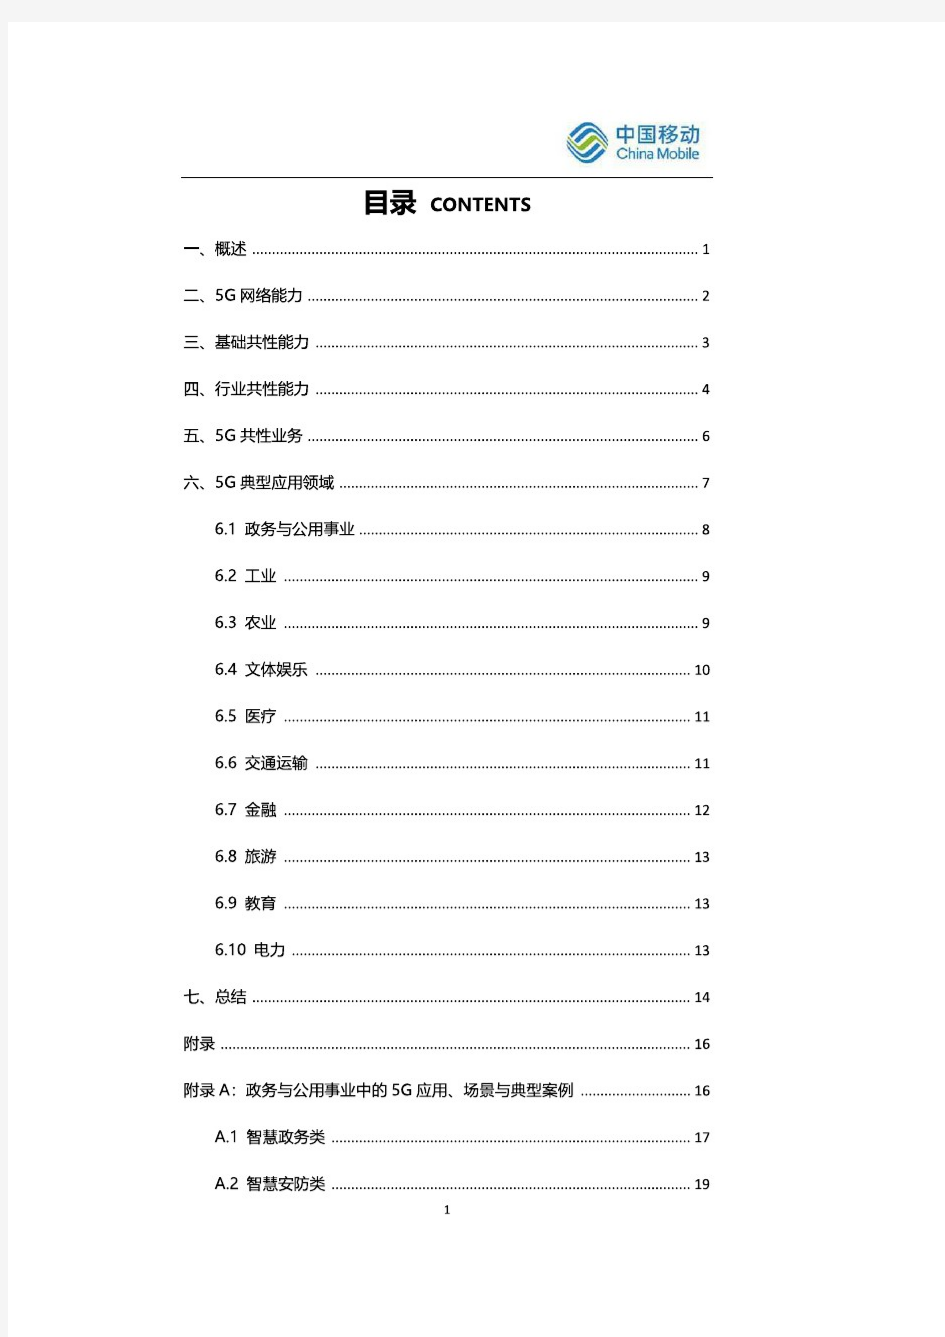 【精品报告】中国移动研究院5G典型应用案例集锦